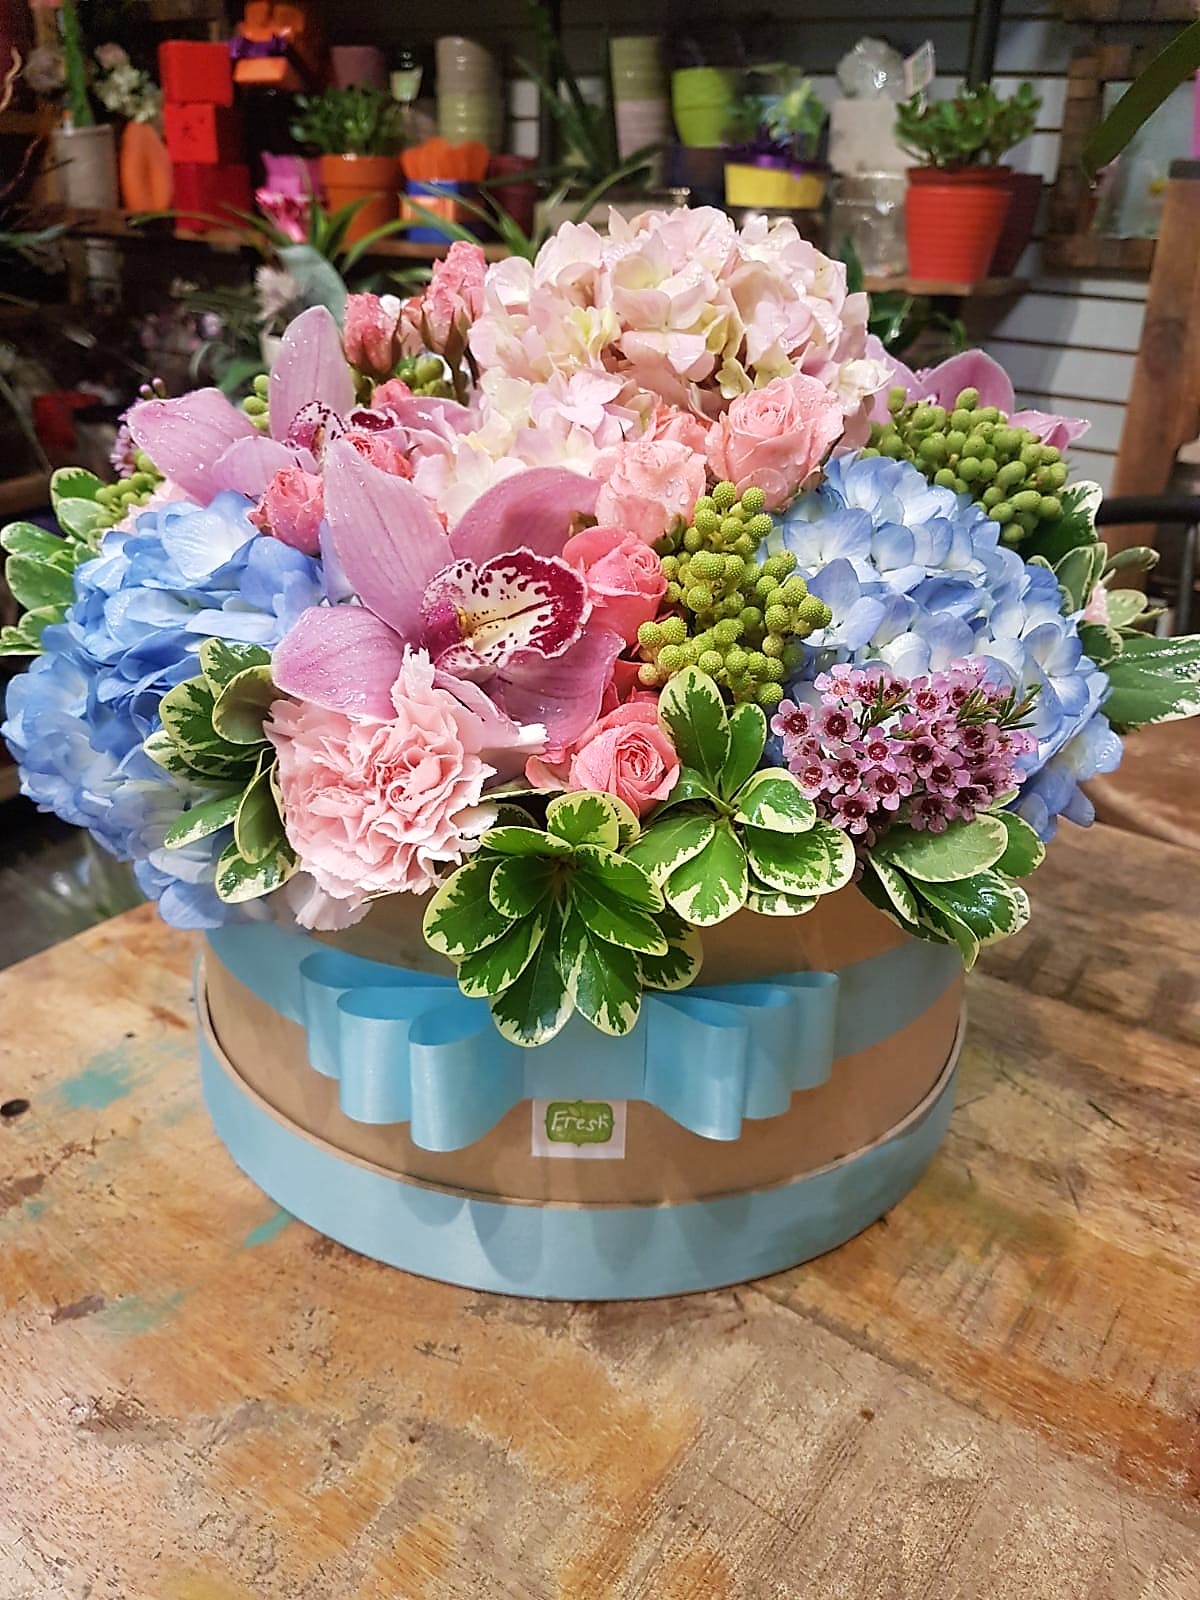 Secret story - Flower arrangement in a designed hat box. Buy in